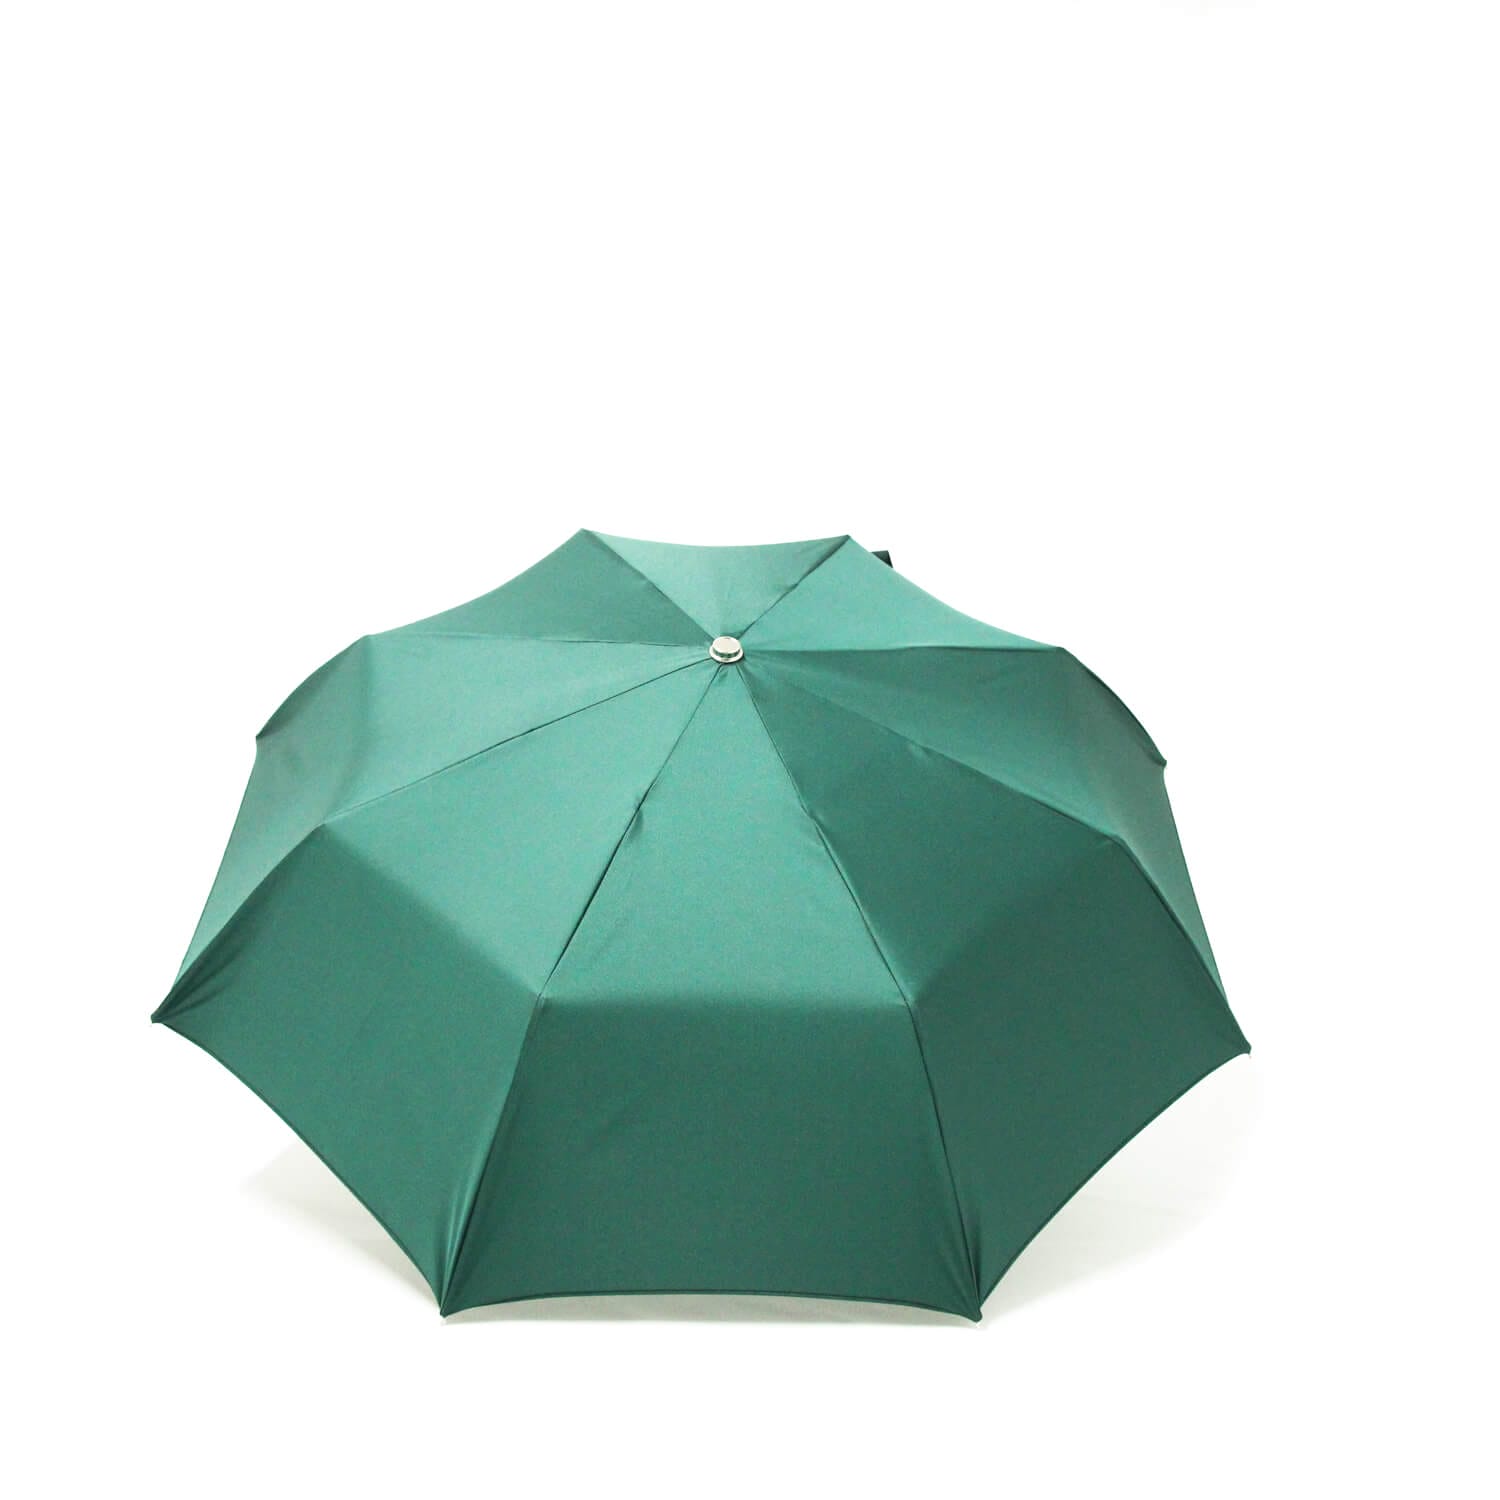 Parapluie pliant classique vert